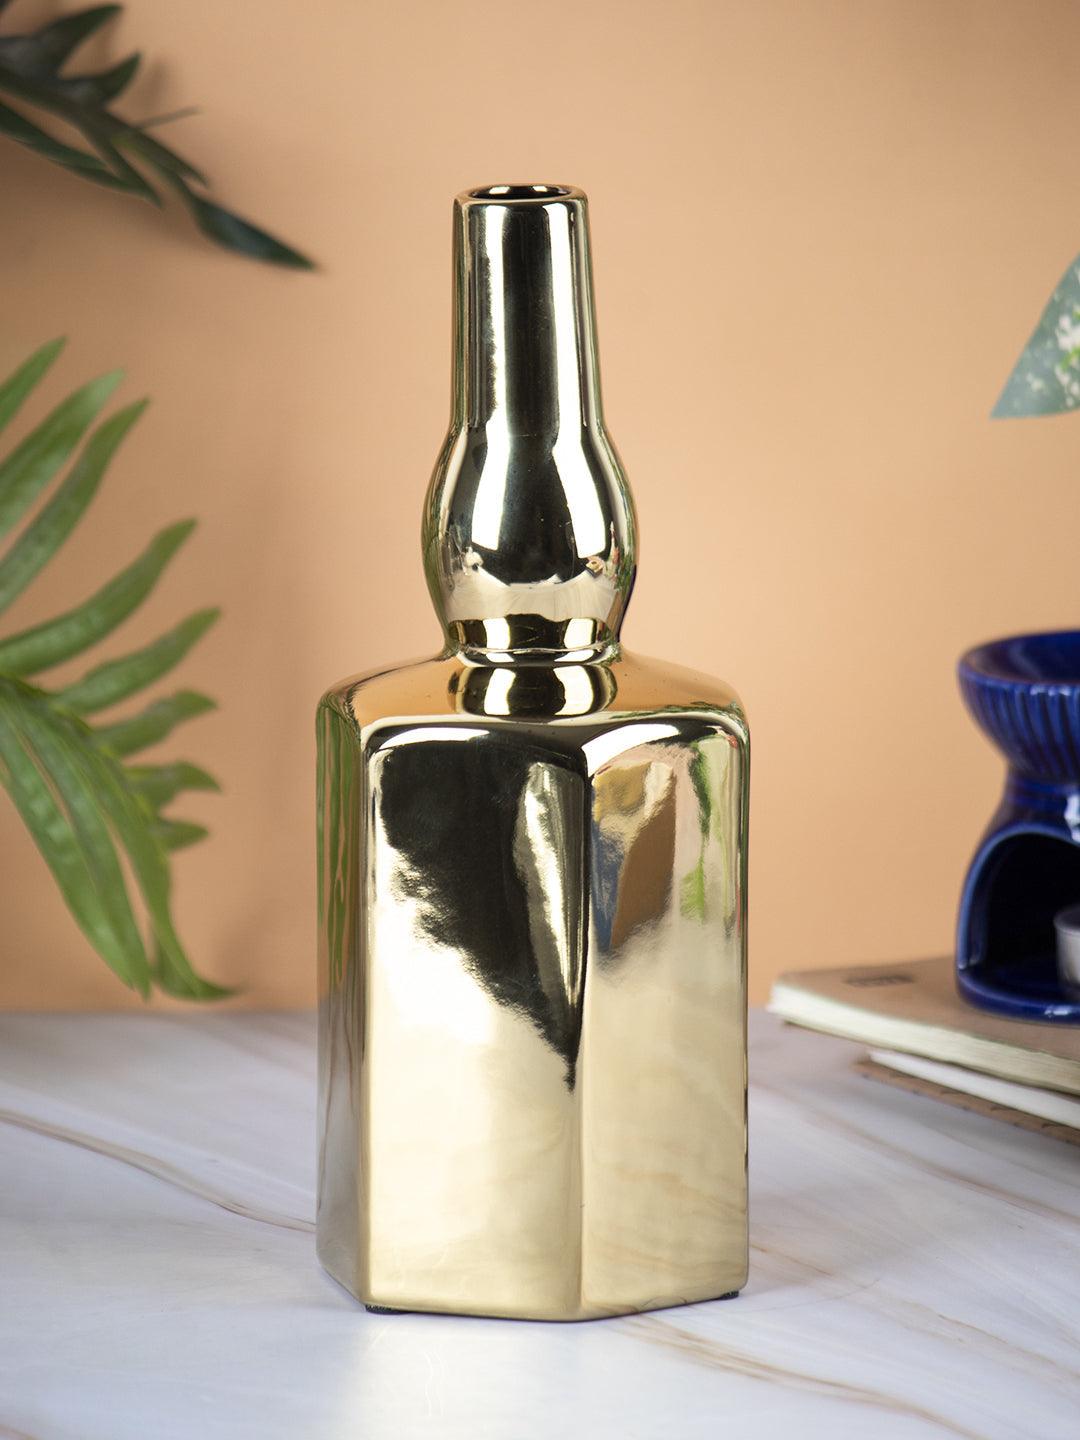 VON CASA Ceramic Gold Bottle Shaped Vase - VON CASA